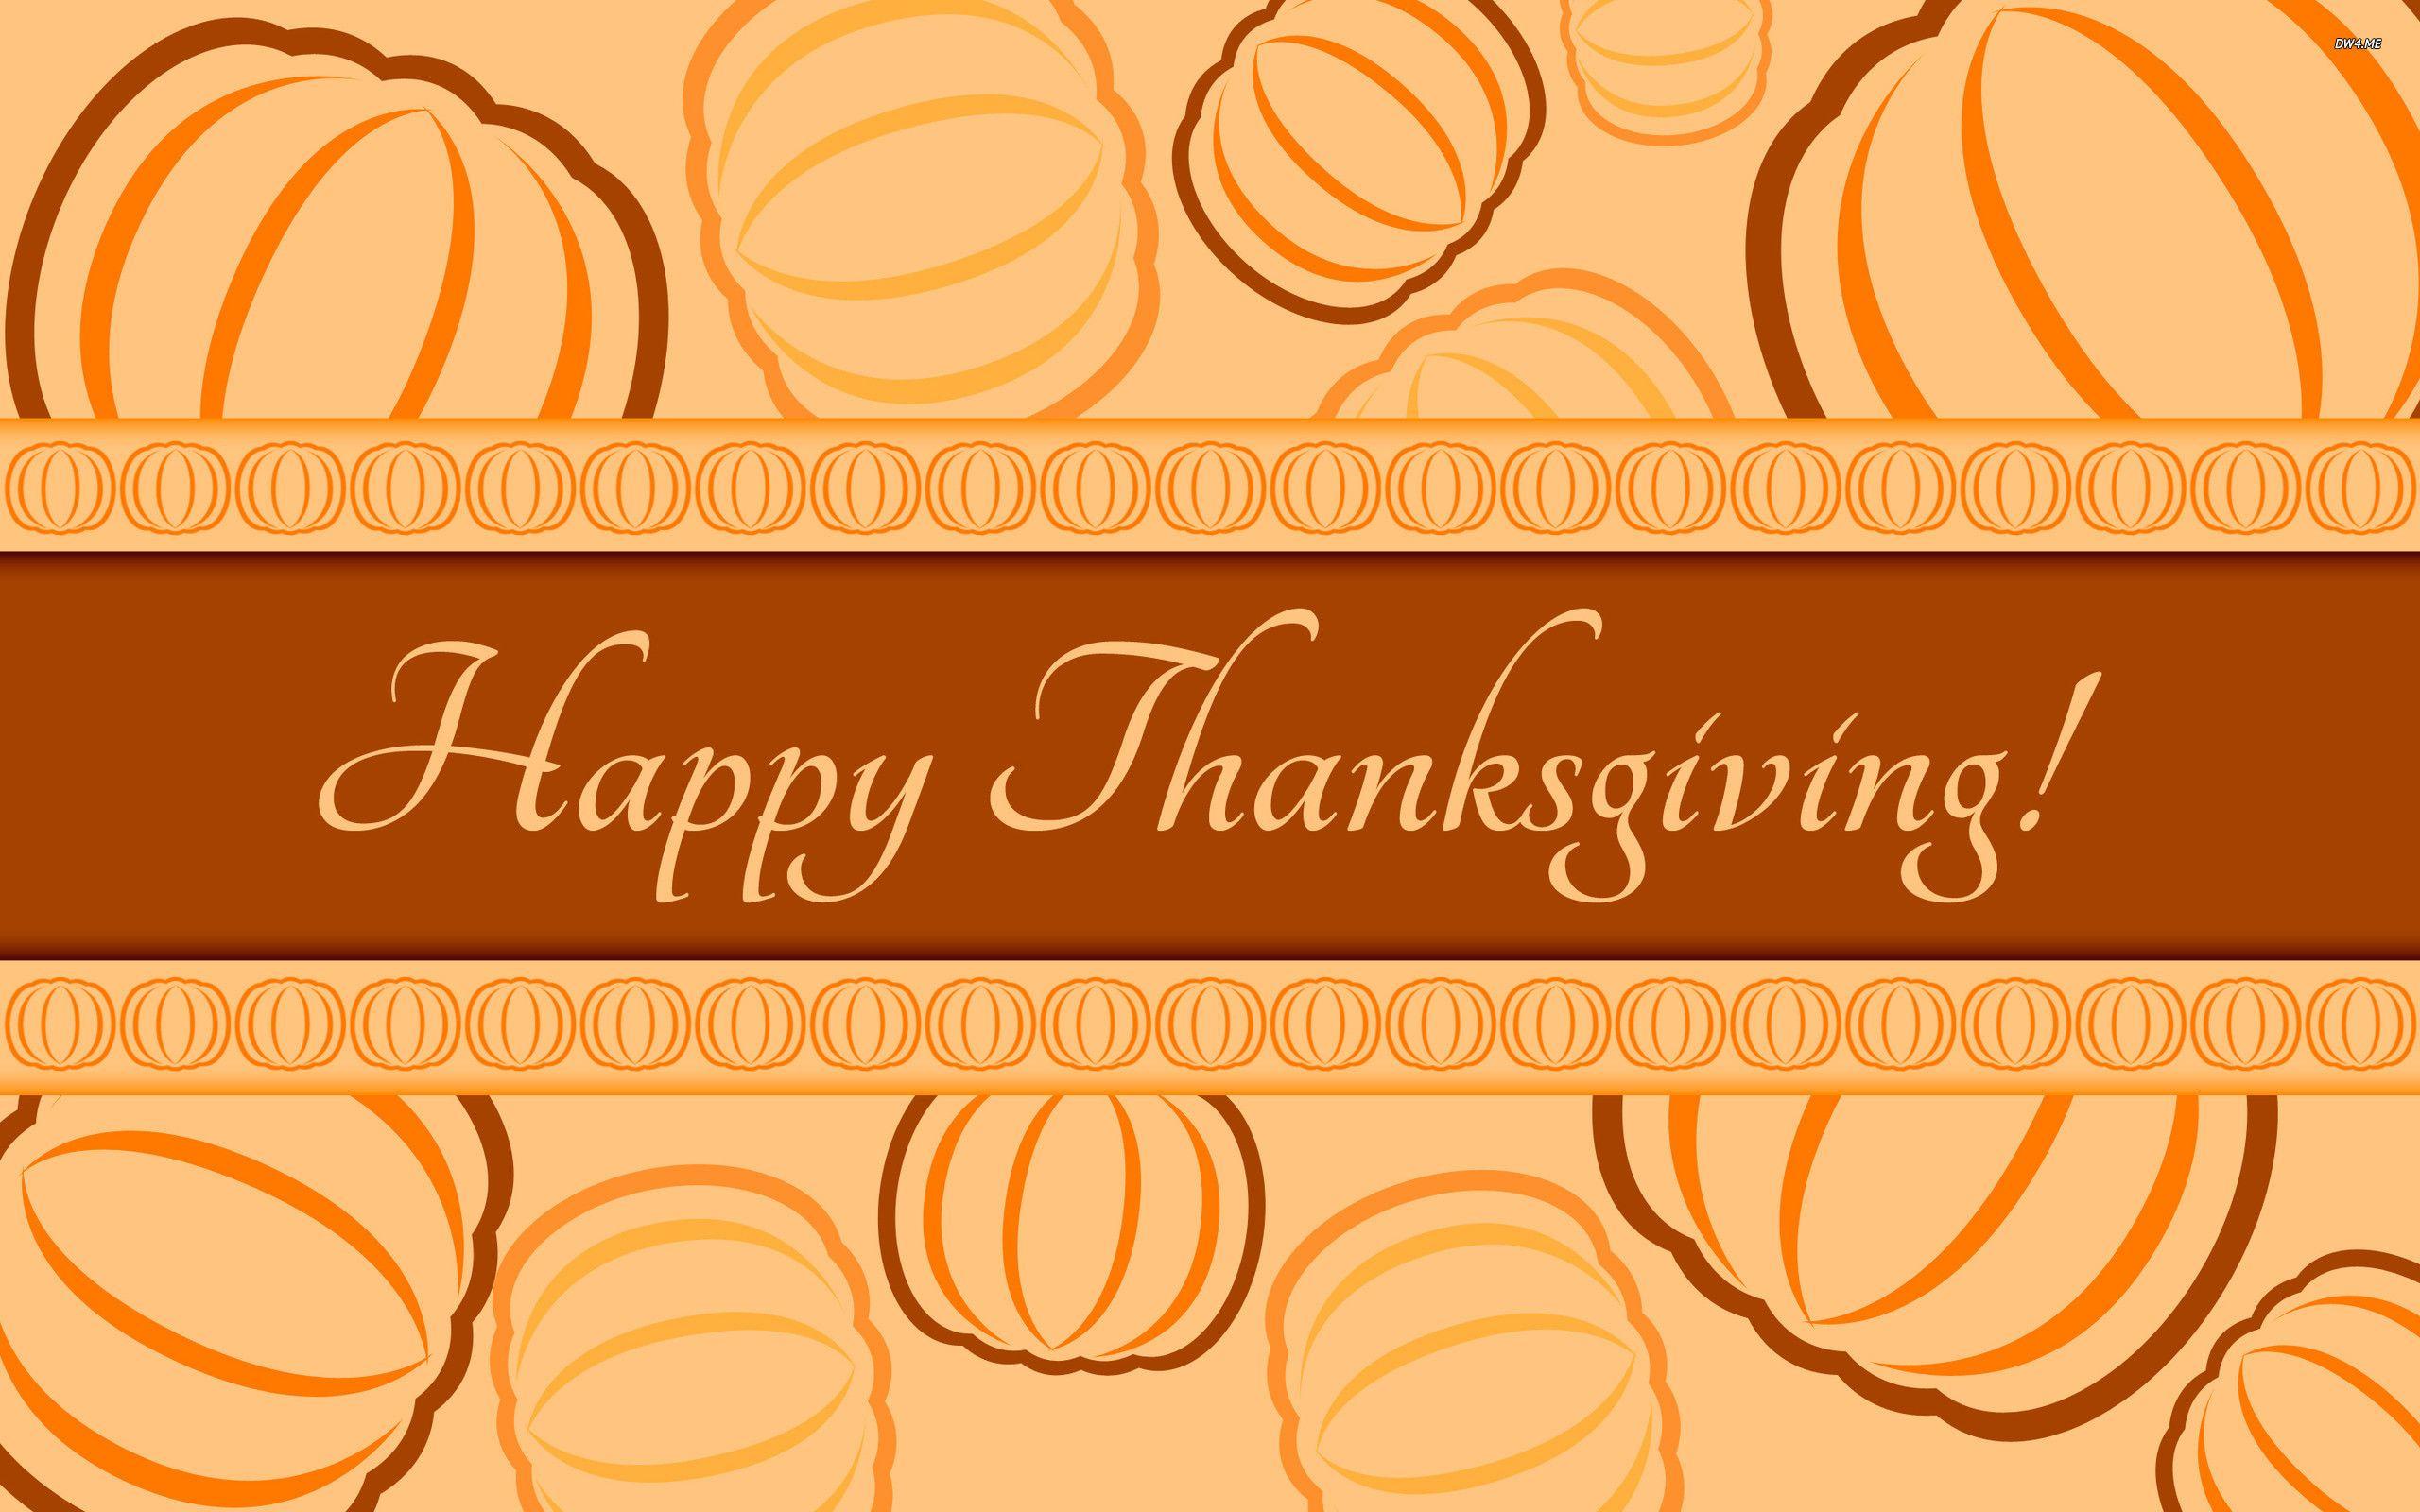 Happy Thanksgiving! wallpaper wallpaper - #